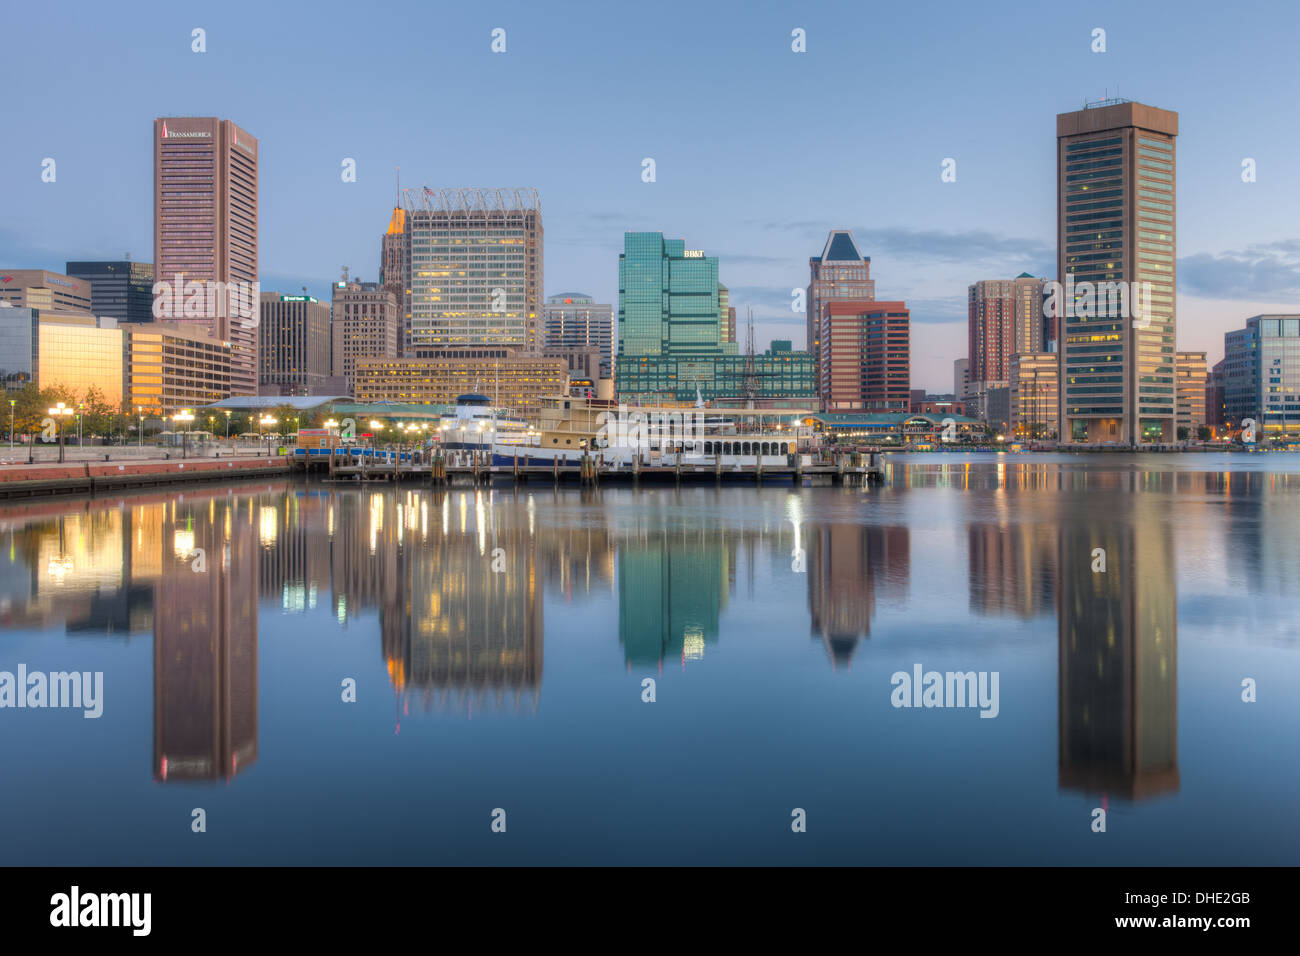 Toits de Baltimore à l'aube, y compris la Tour de la Transamerica et World Trade Center, se reflétant dans les eaux du port intérieur. Banque D'Images